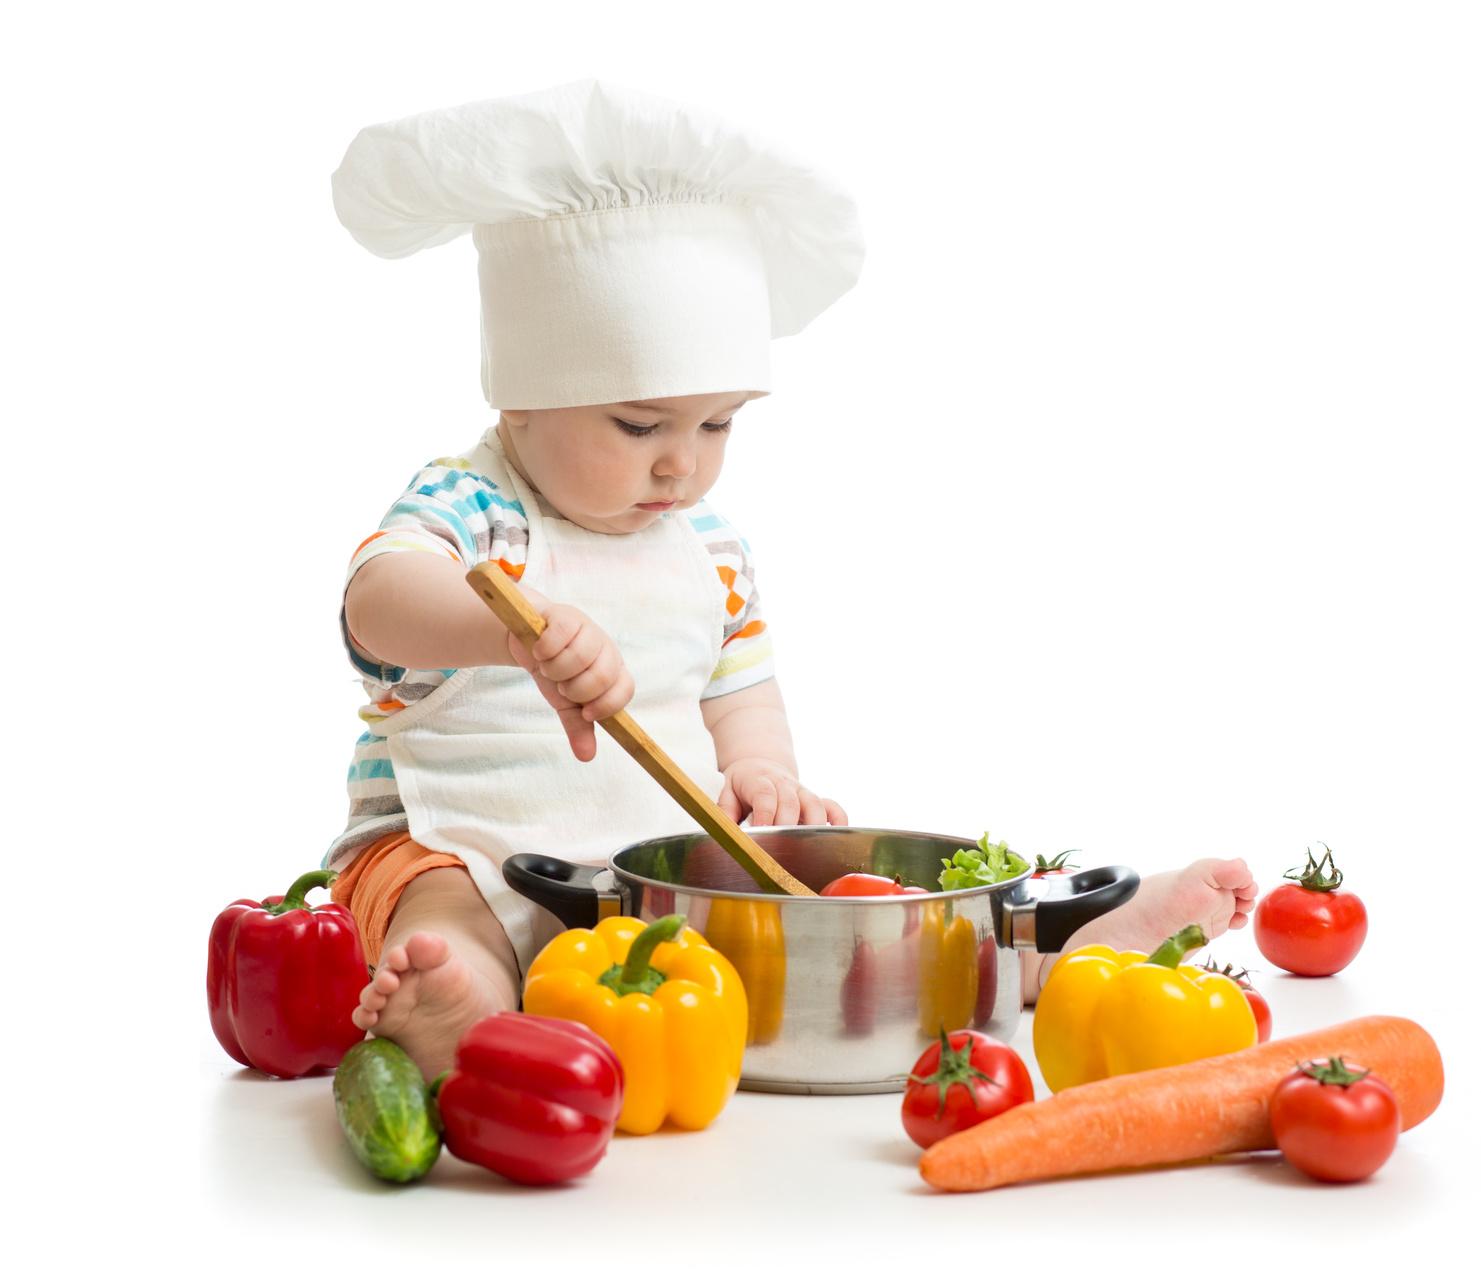 Devet savjeta za pripremu hrane djeci